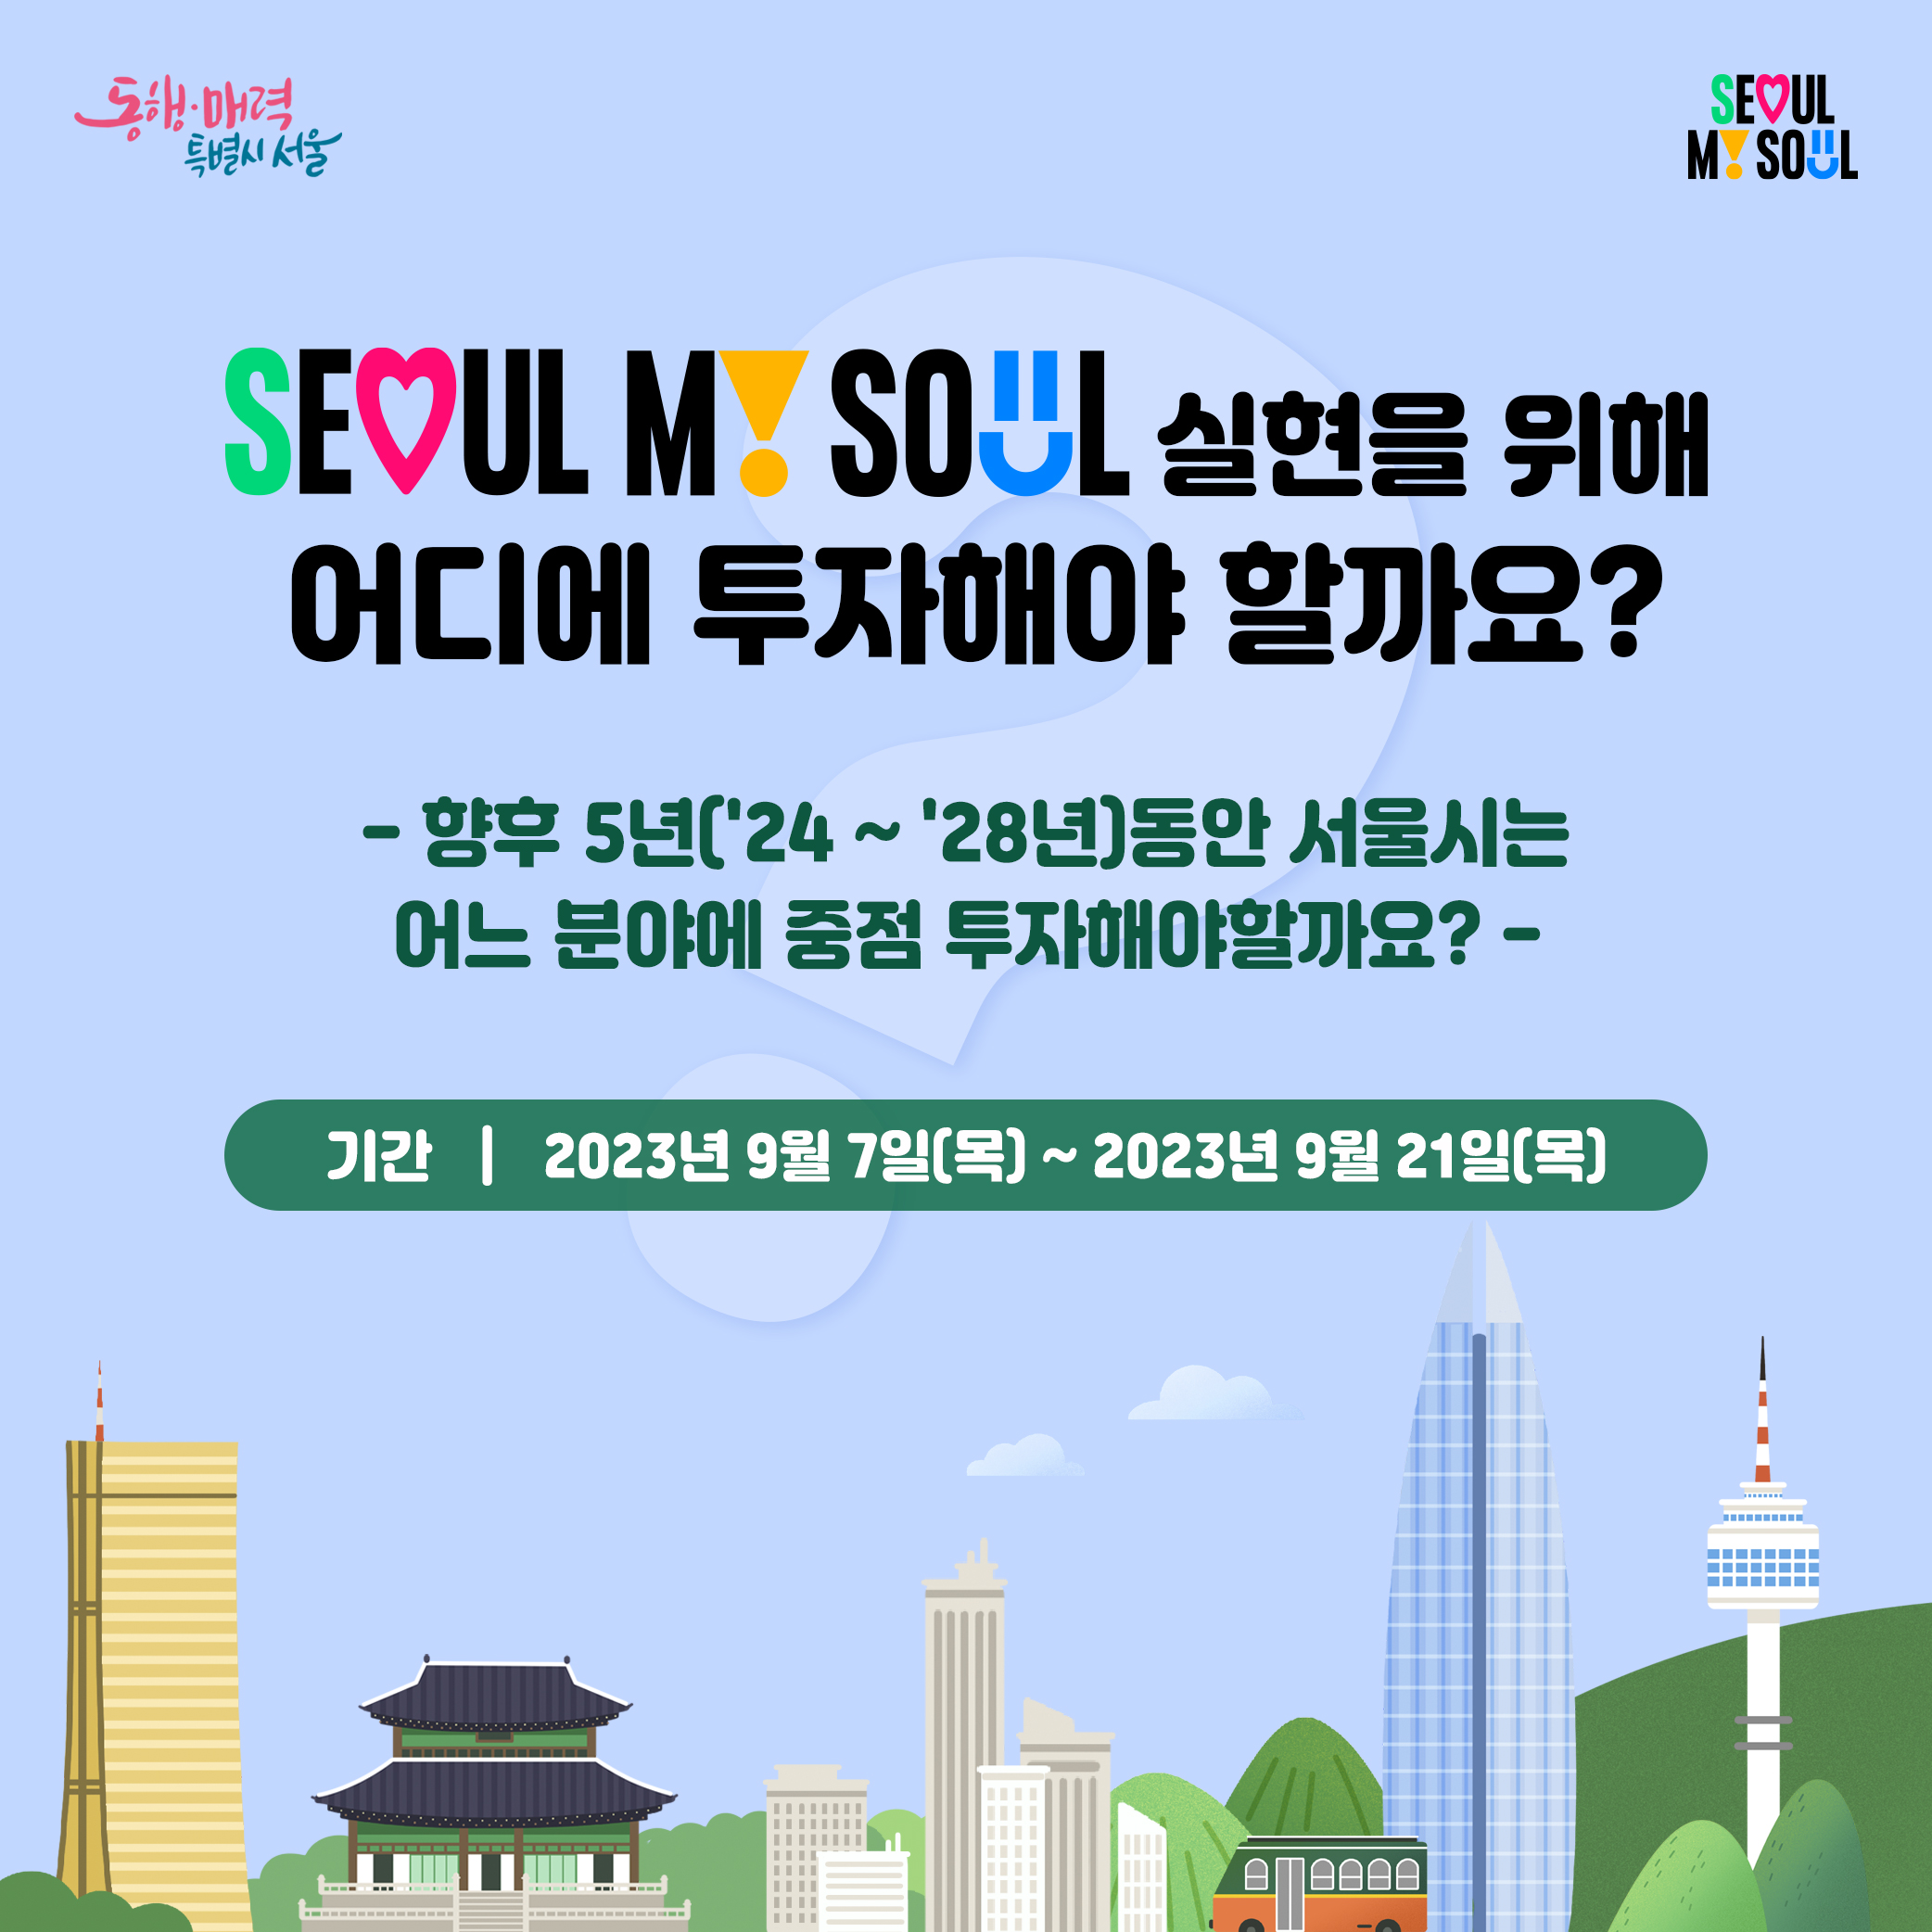 SEOUL MY SOUL 실현을 위해 어디에 투자해야 할까요? - 향후 5년(24~28년)동안 서울시는 어느 분야에 중점 투자해야 할까요?- 기간:2023년9월7일(목)~2023년9월21일(목)